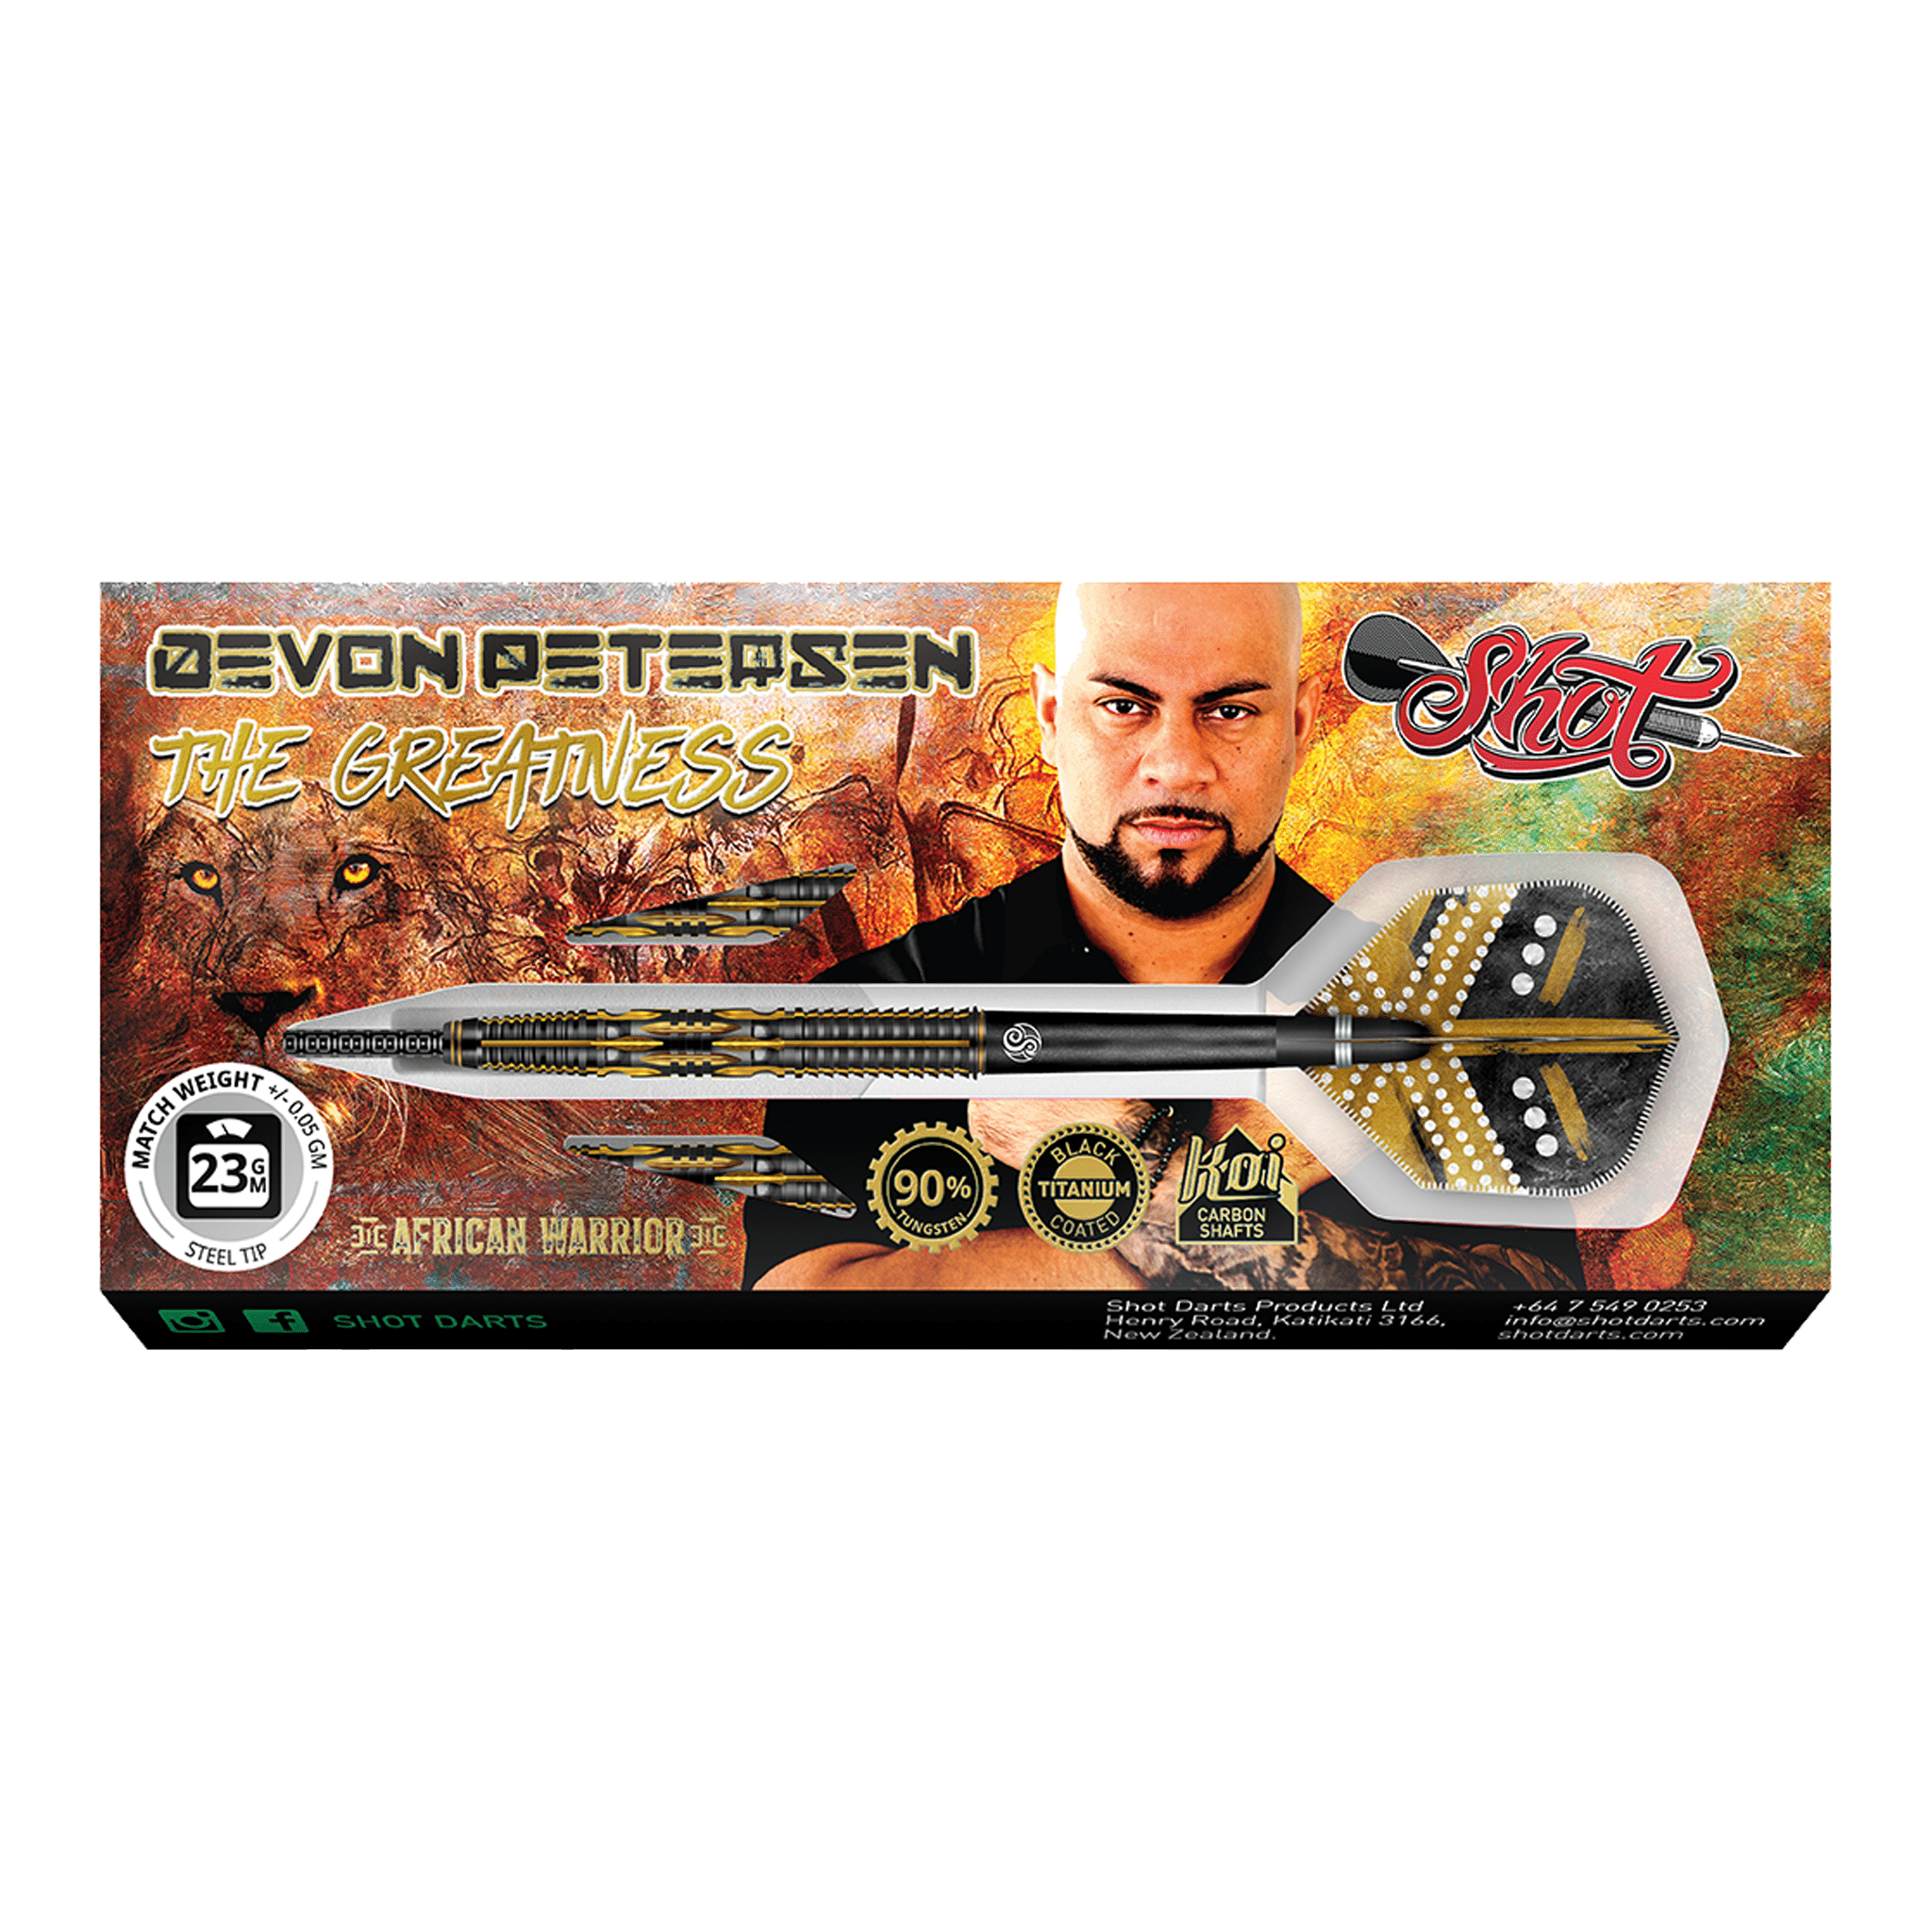 Shot Devon Peterson The Greatness - 90% Tungsten Steel Tip Darts Darts